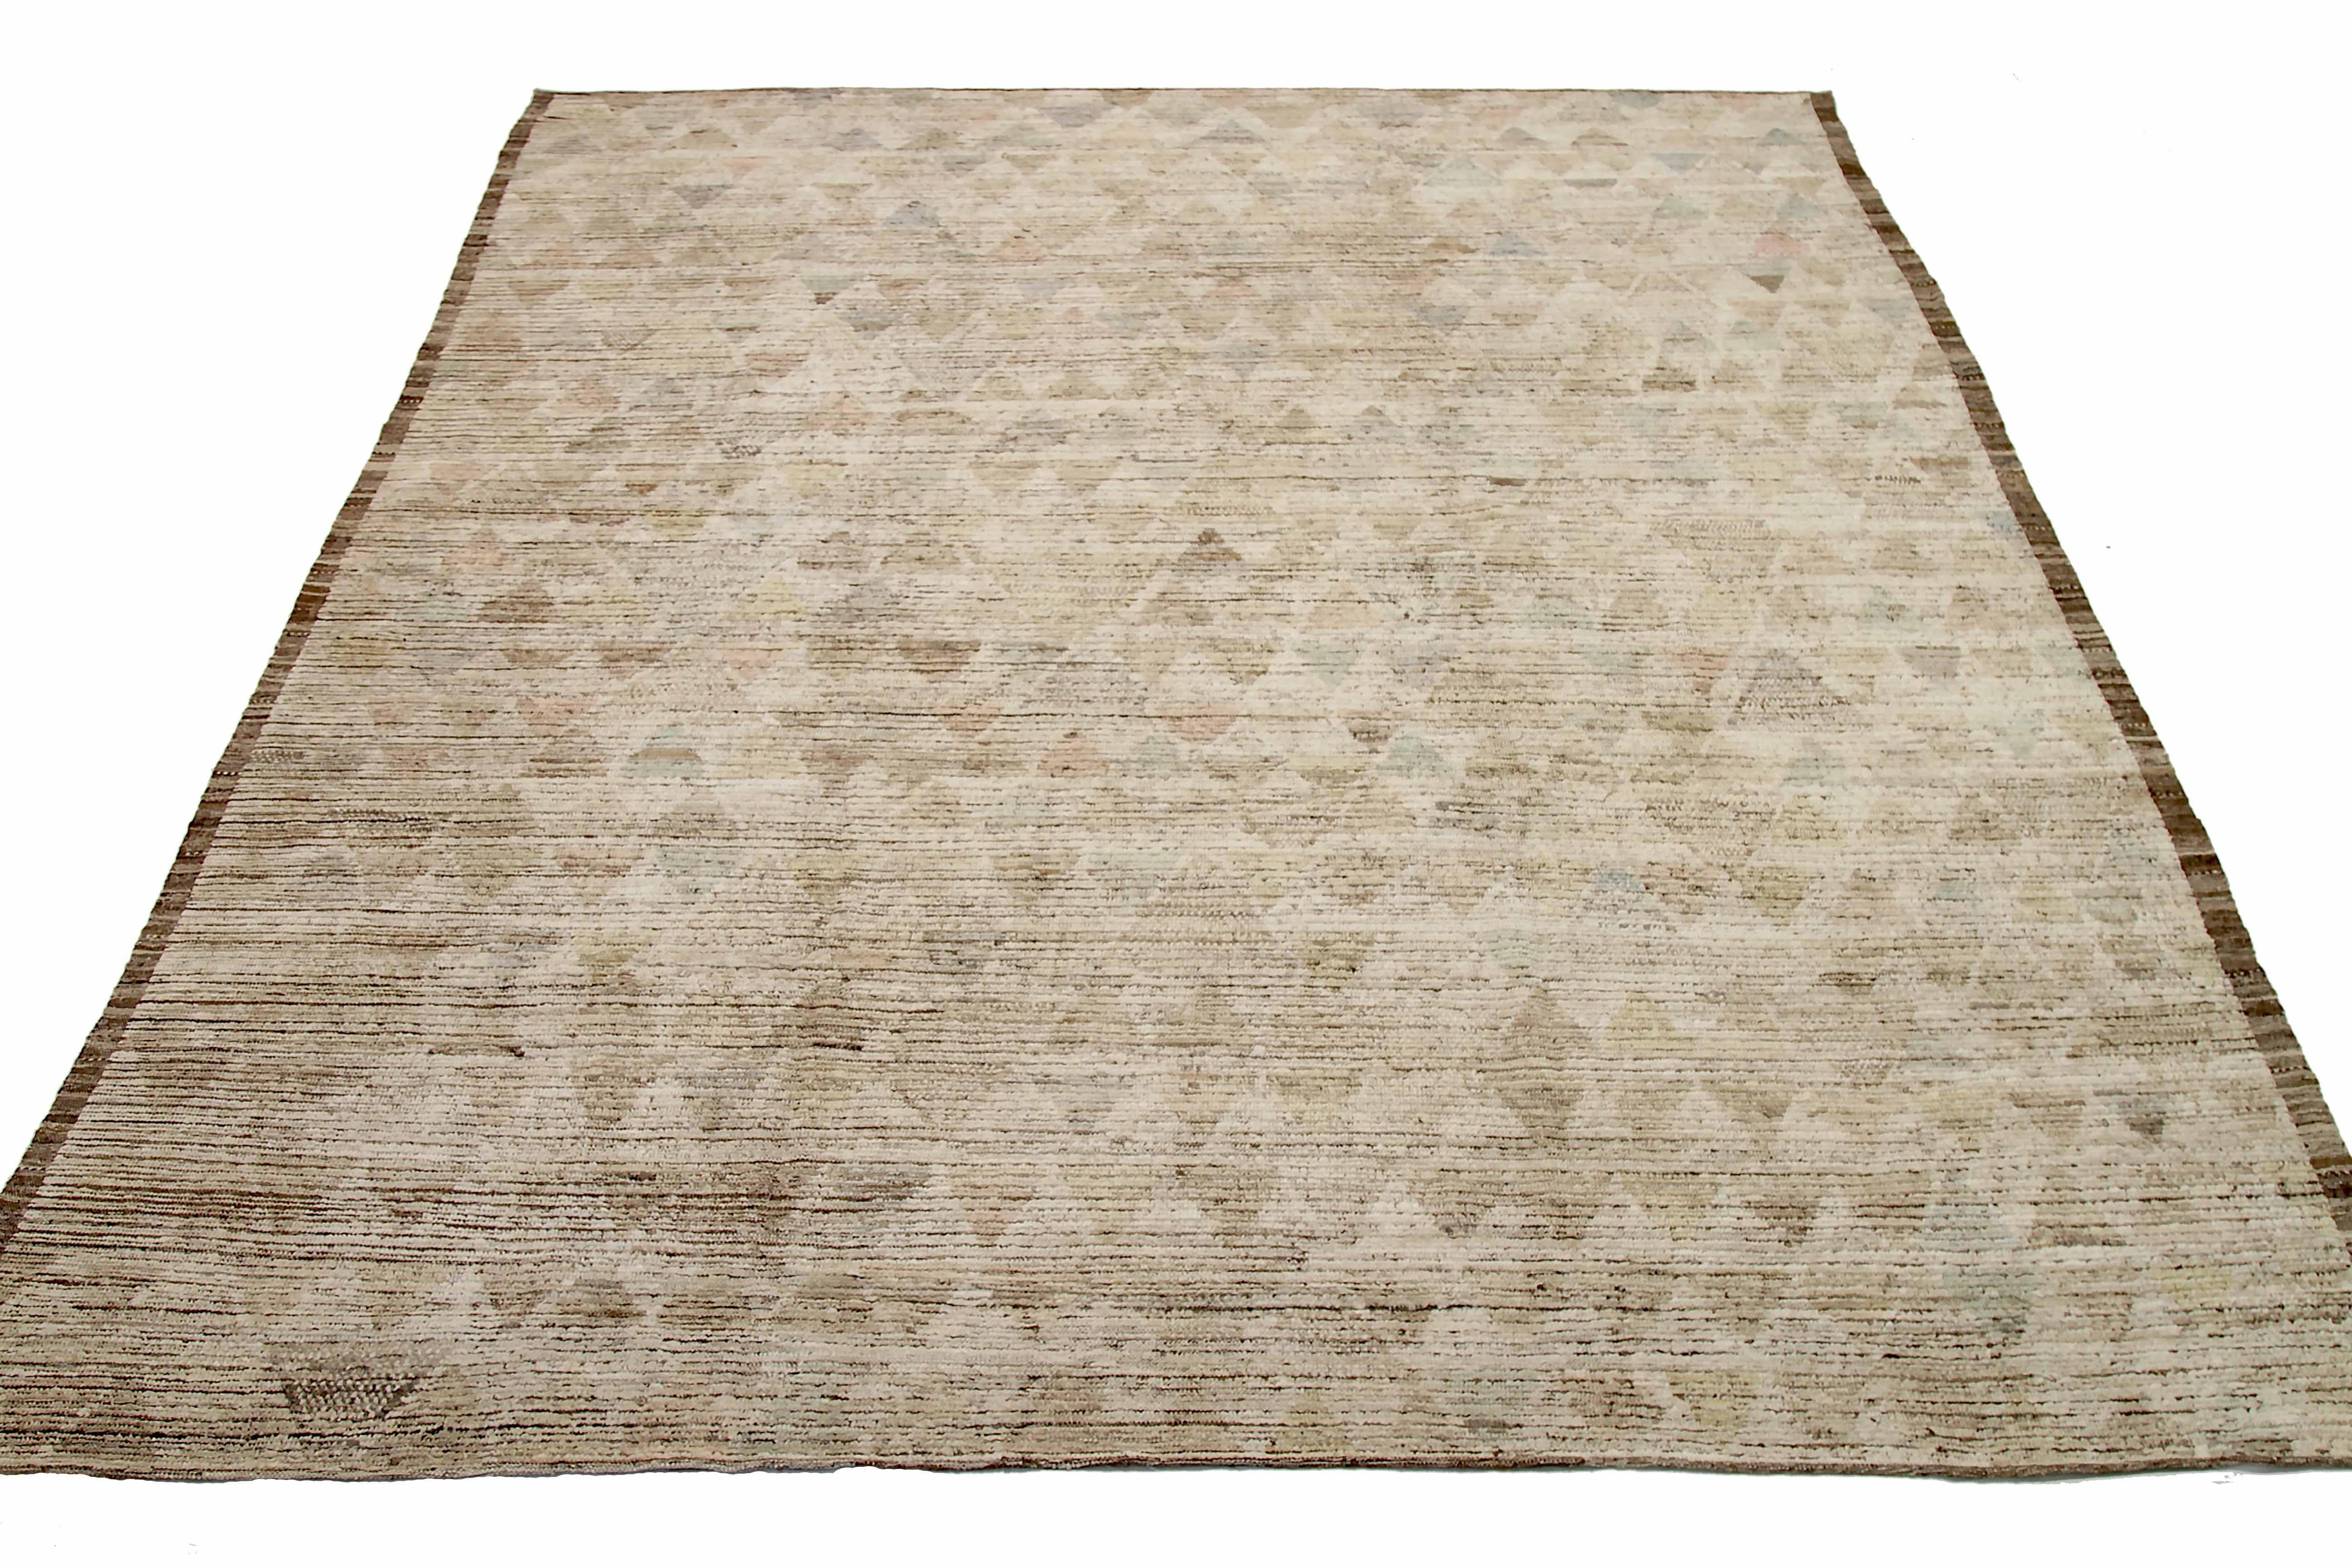 Neuer afghanischer Teppich, handgewebt aus feinster Schafswolle. Es ist mit natürlichen pflanzlichen Farbstoffen gefärbt, die für Menschen und Haustiere sicher sind. Es handelt sich um ein traditionelles marokkanisches Design, das von erfahrenen